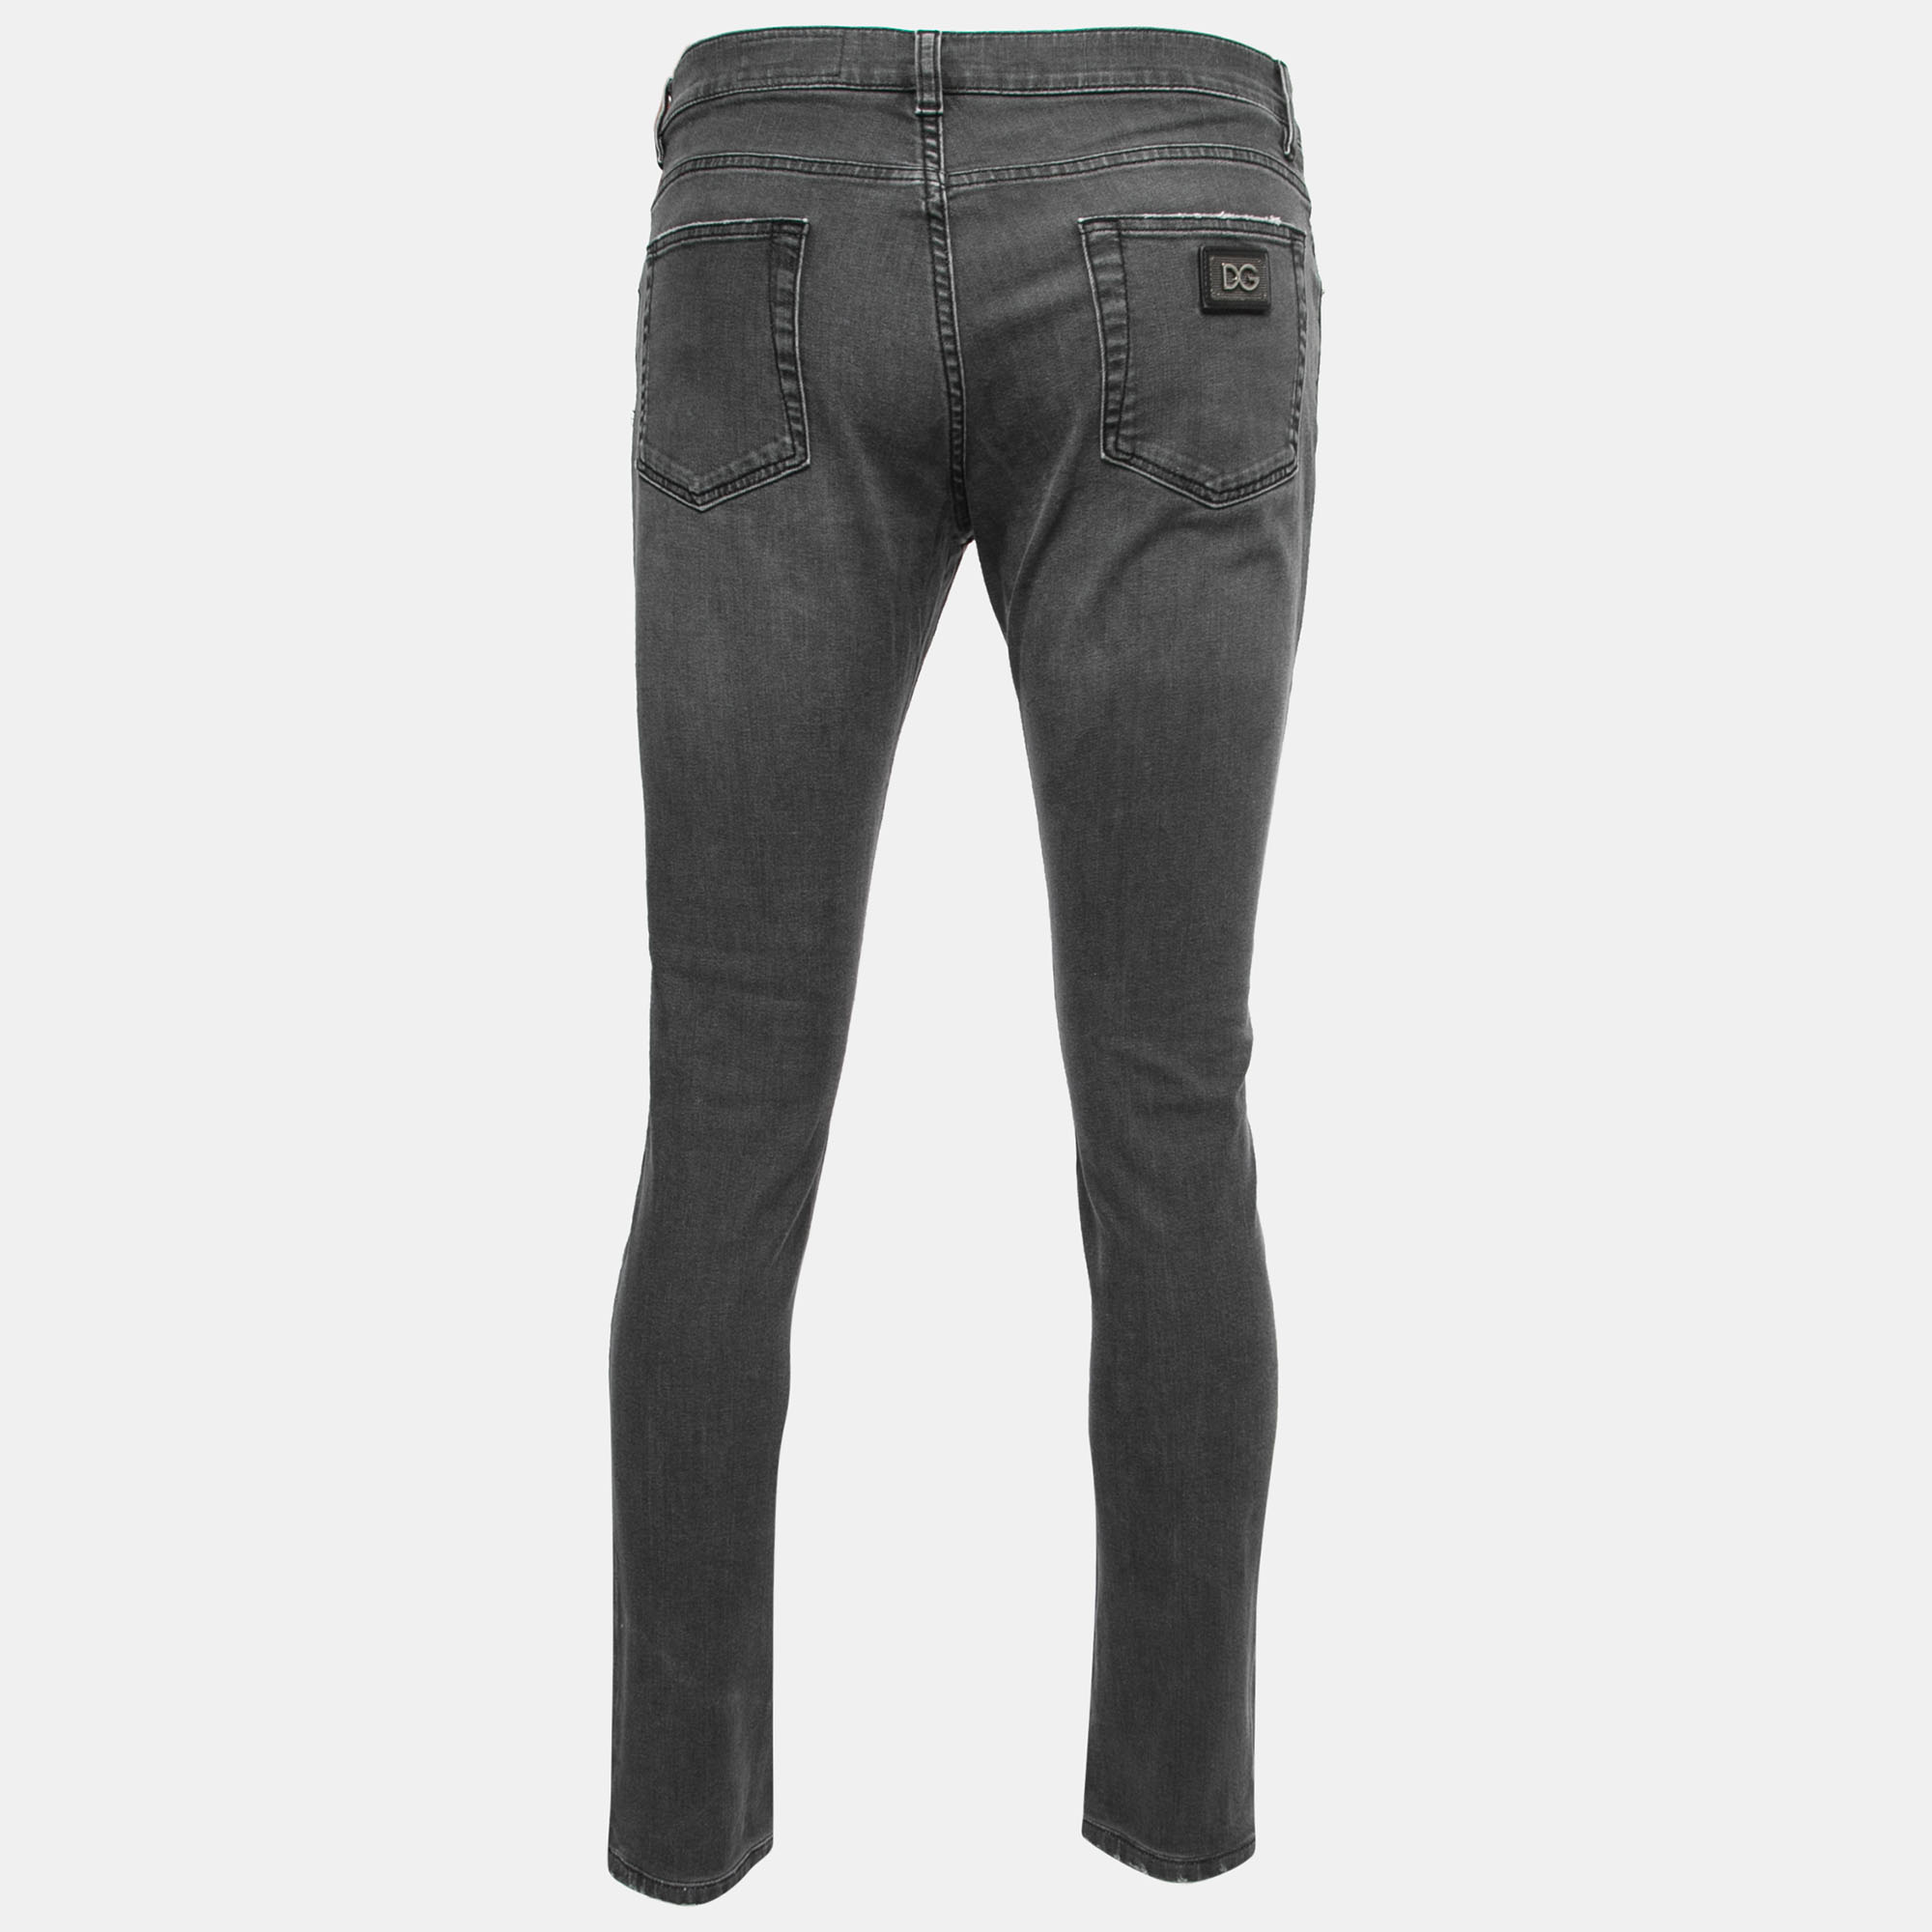 

Dolce & Gabbana Grey Washed Distressed Denim Skinny Jeans Waist 35